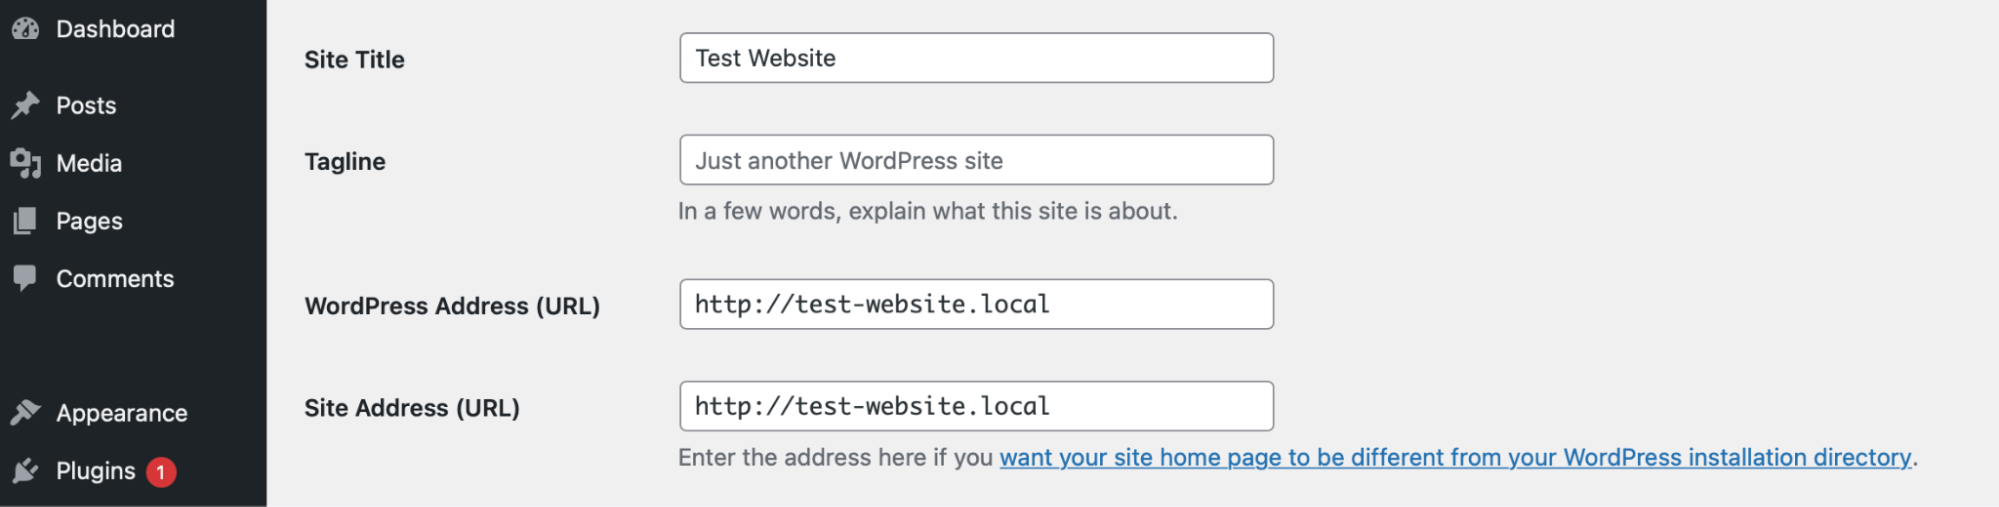 aktualizowanie WordPressa i adresów stron wewnątrz pulpitu nawigacyjnego